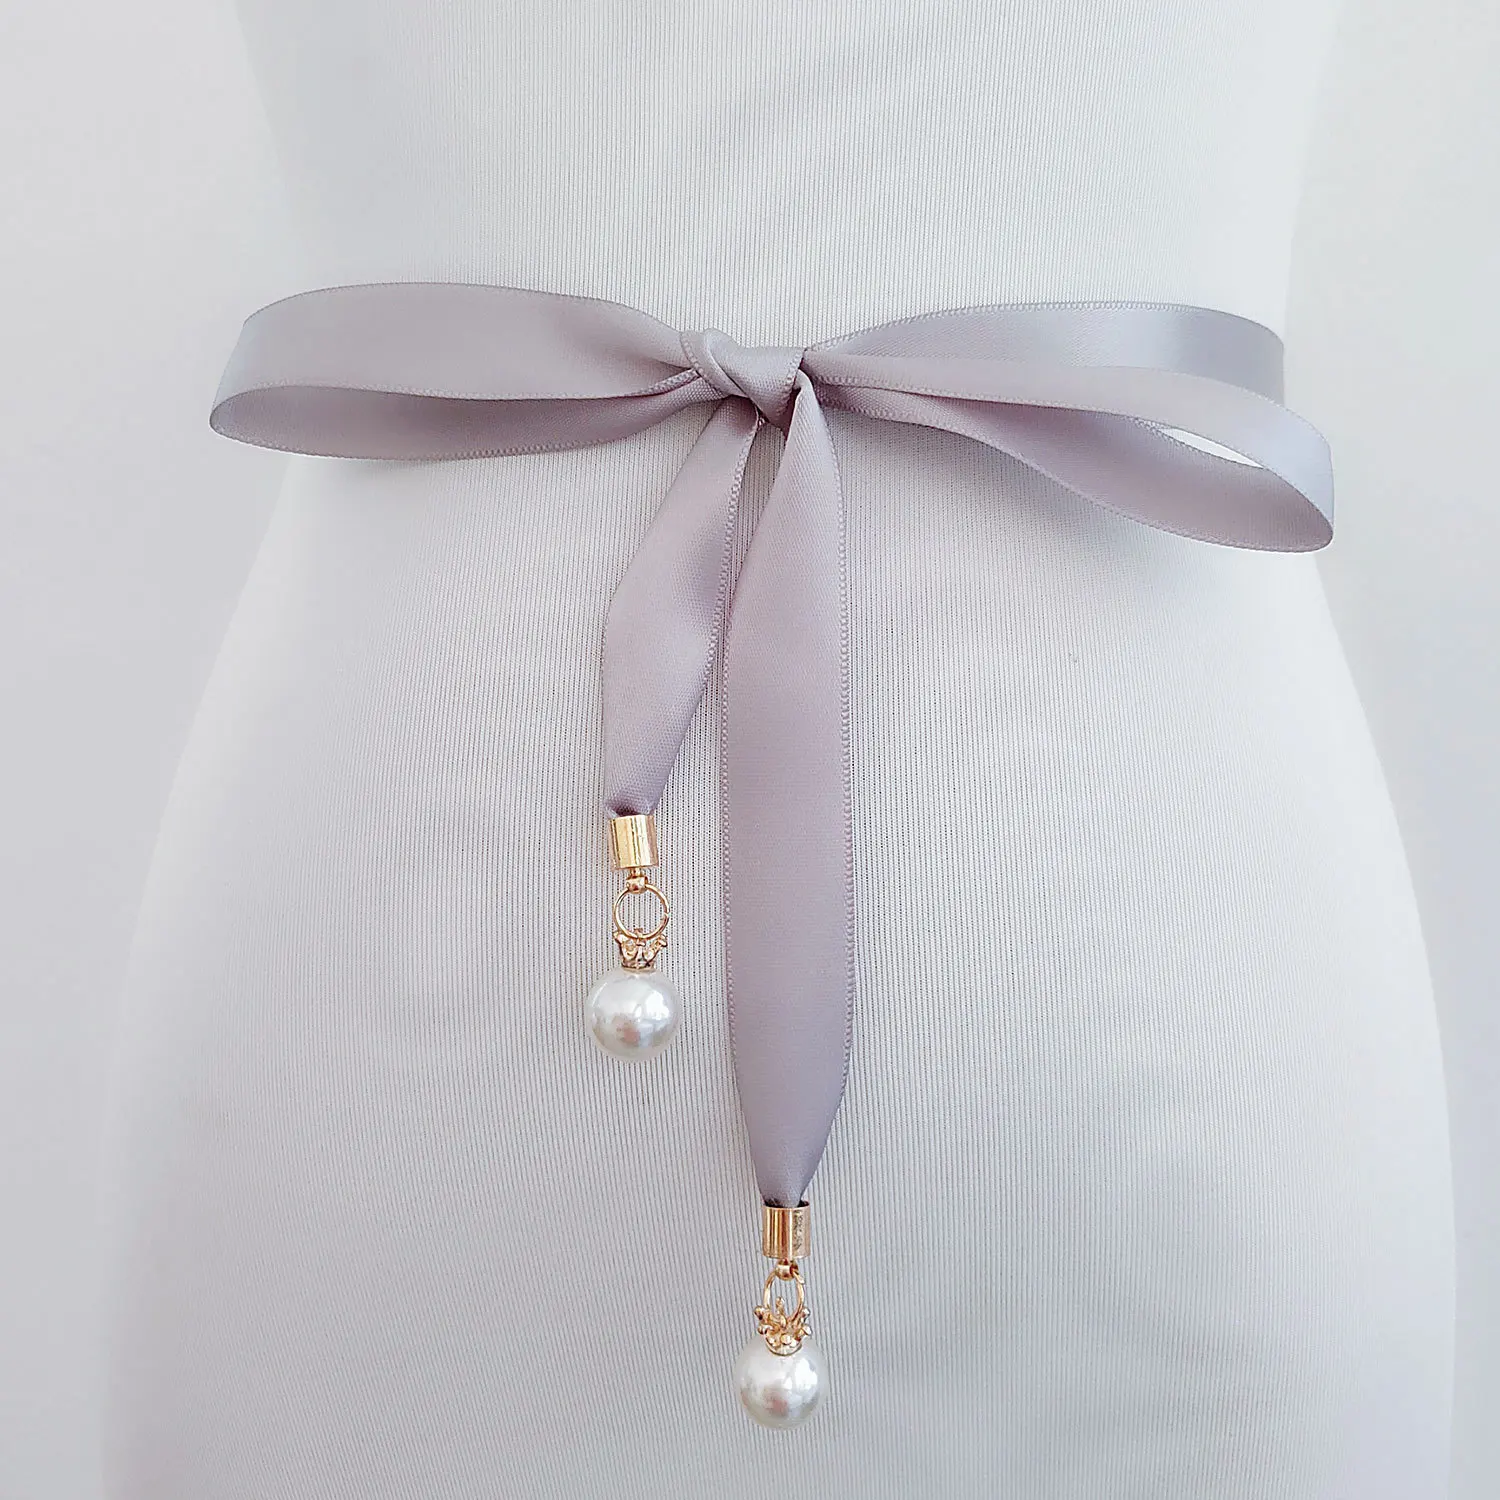 Жемчуг кулон стильное платье на выпускной ремень высокого качества двухсторонний атласный пояс жемчужный пояс тонкое на платье невесты свадебное Пояс - Цвет: Светло-серый